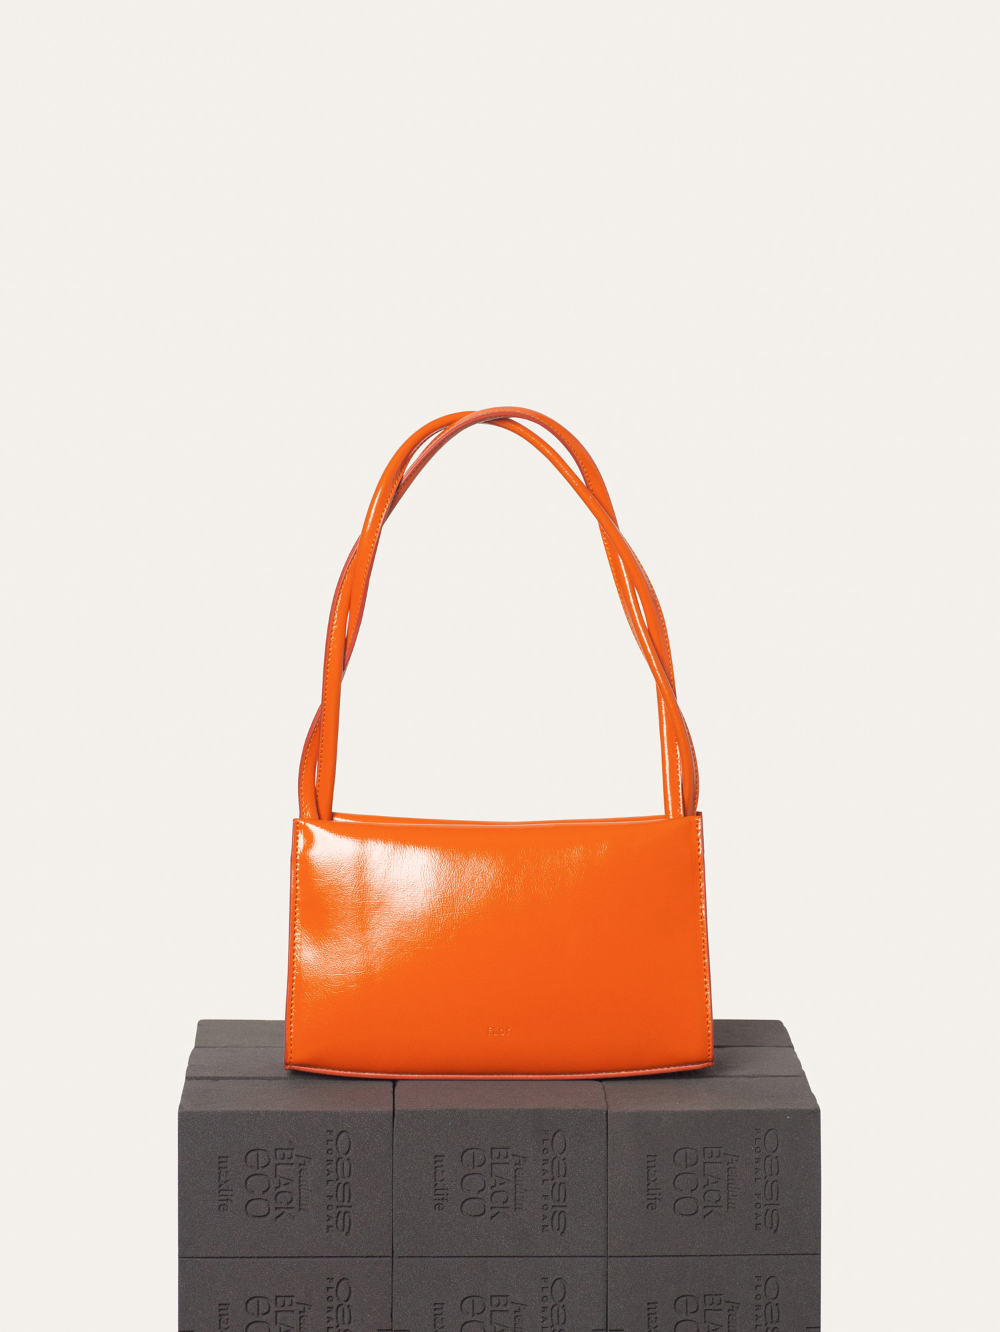 bag orange color image-S8L3